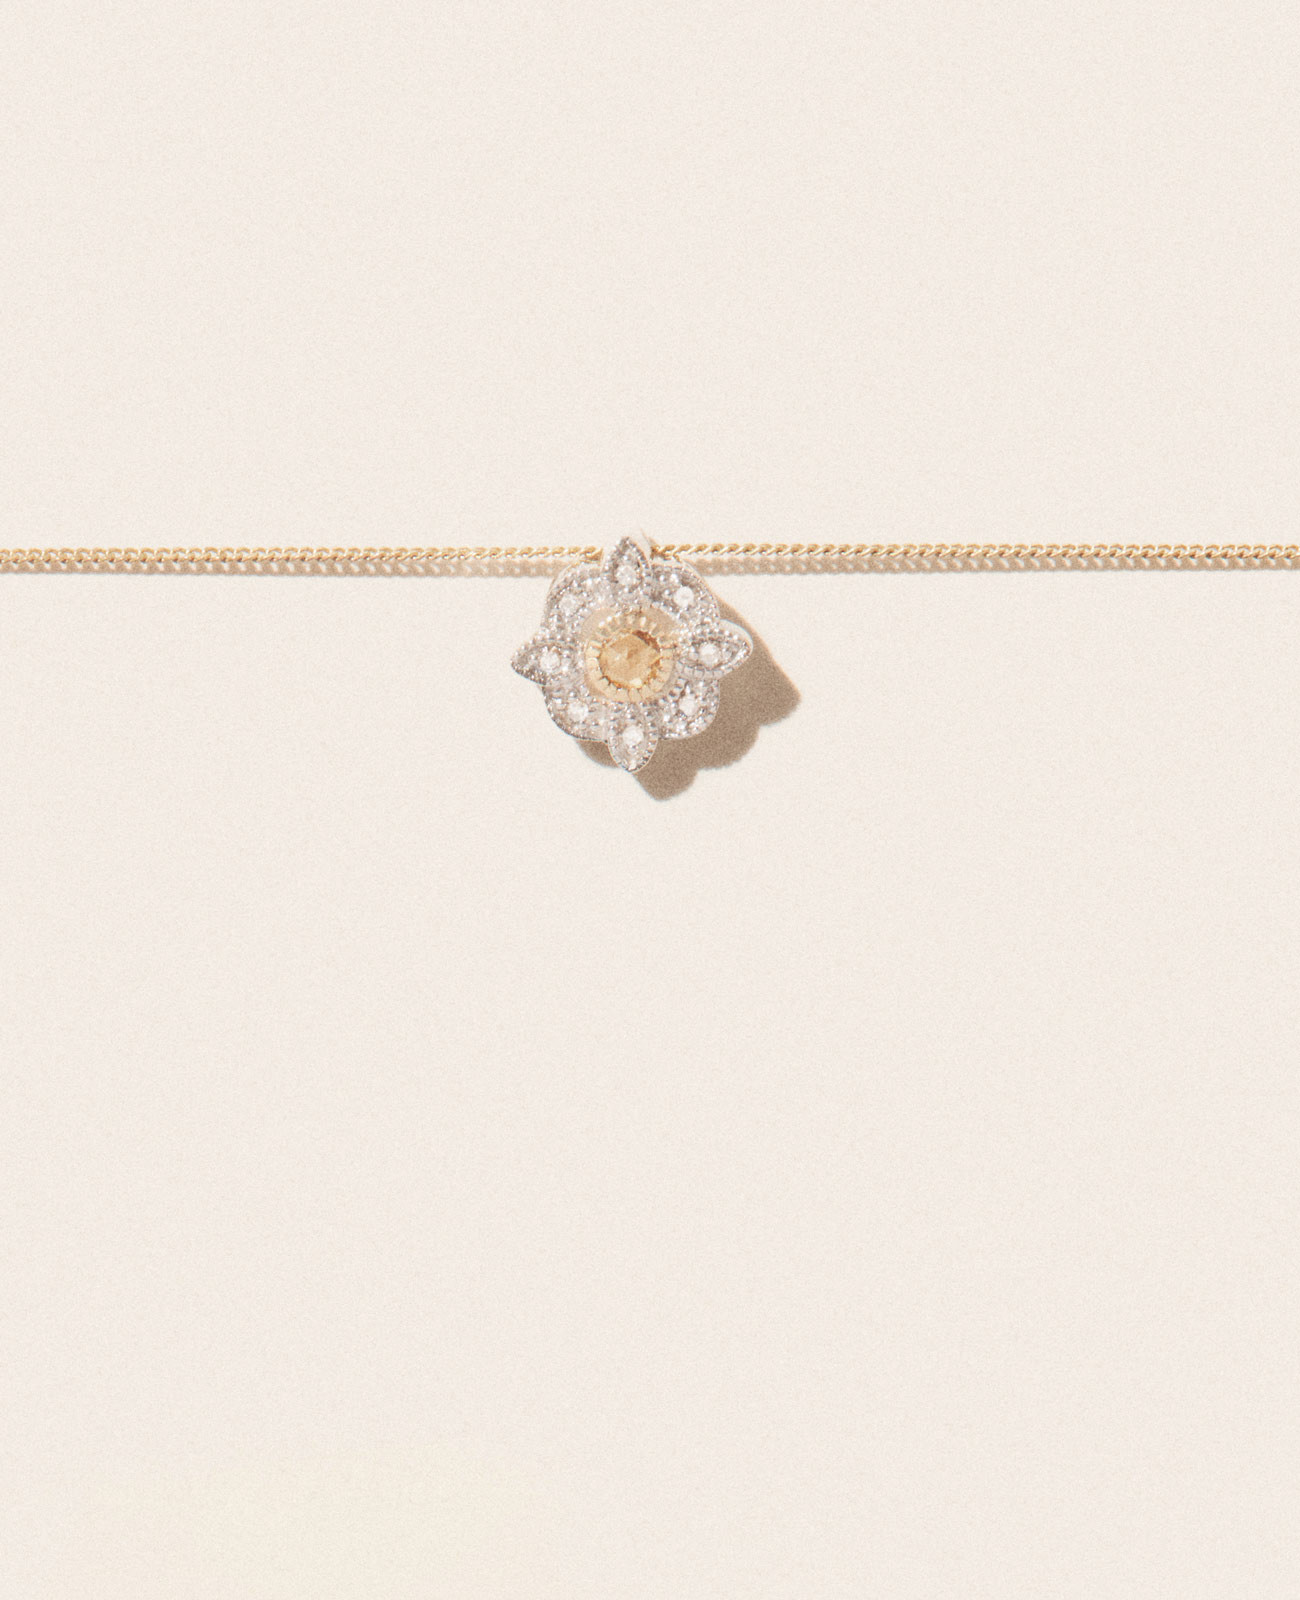 BETTINA DIAMOND necklace pascale monvoisin jewelry paris